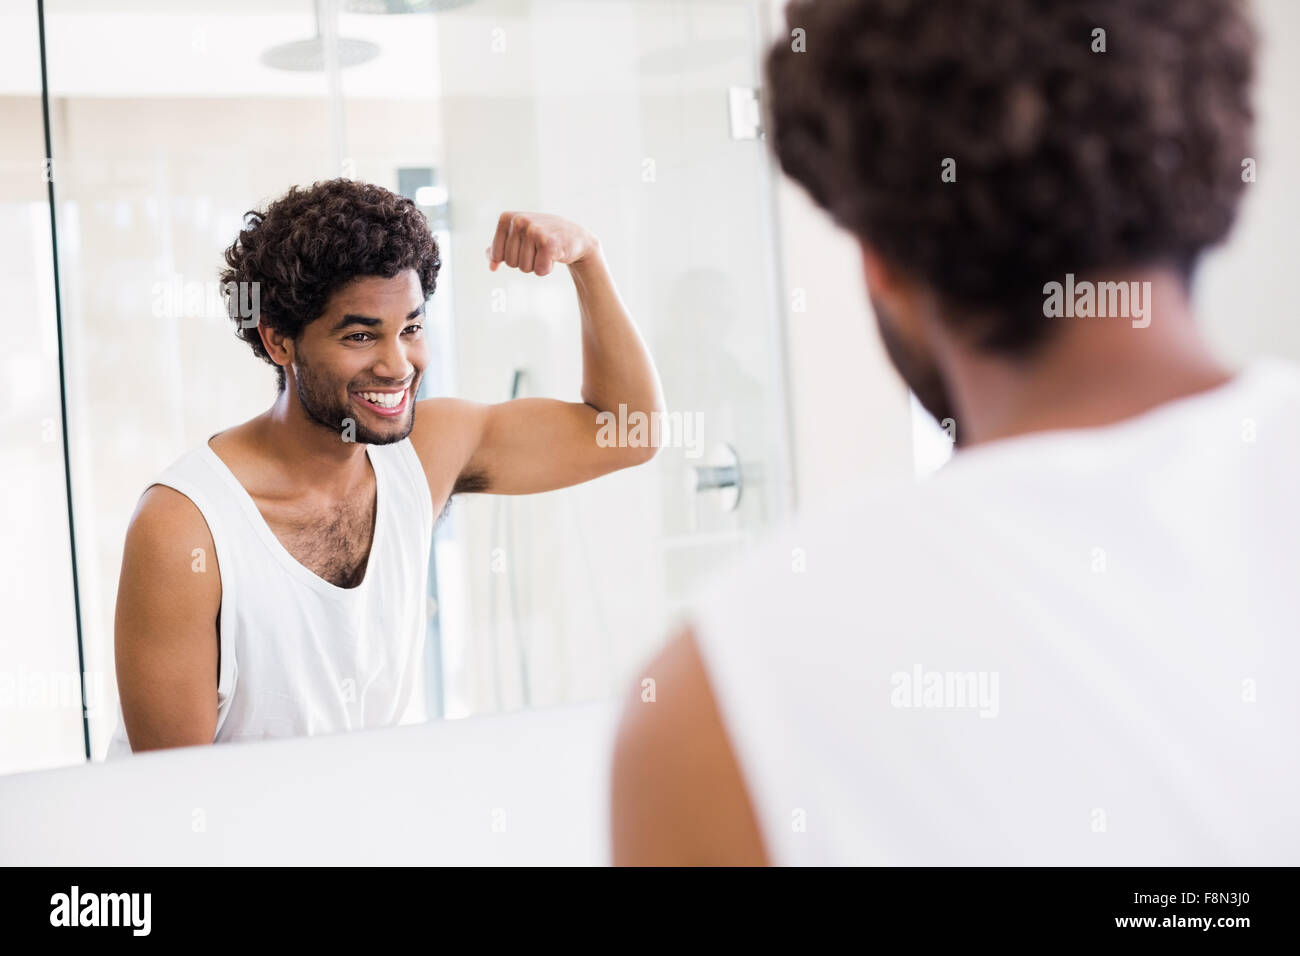 Lächelnder Mann seinen Bizeps im Spiegel zu betrachten Stockfoto